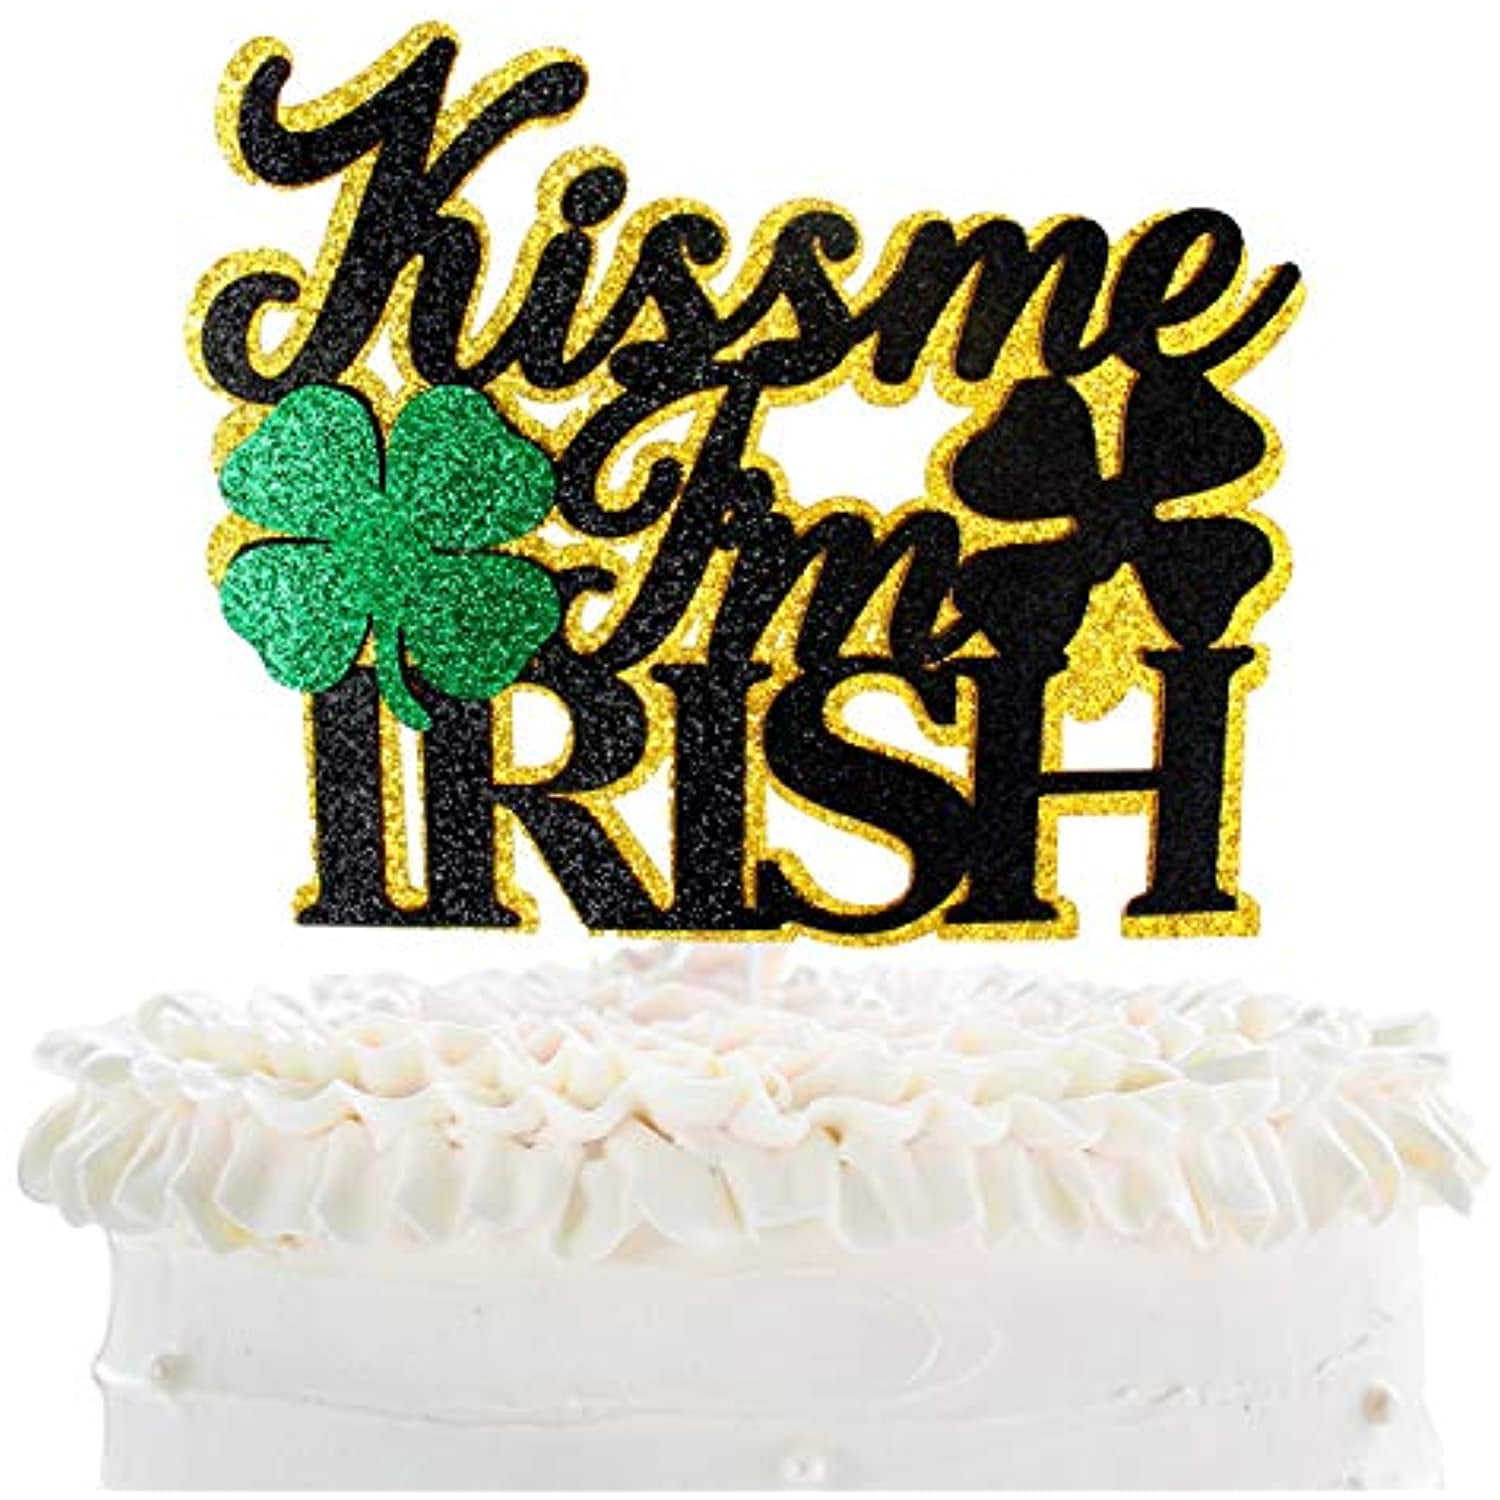 Kiss Me Im Irish Cake Topper - Green Glitter Shamrock Lucky Clover ...